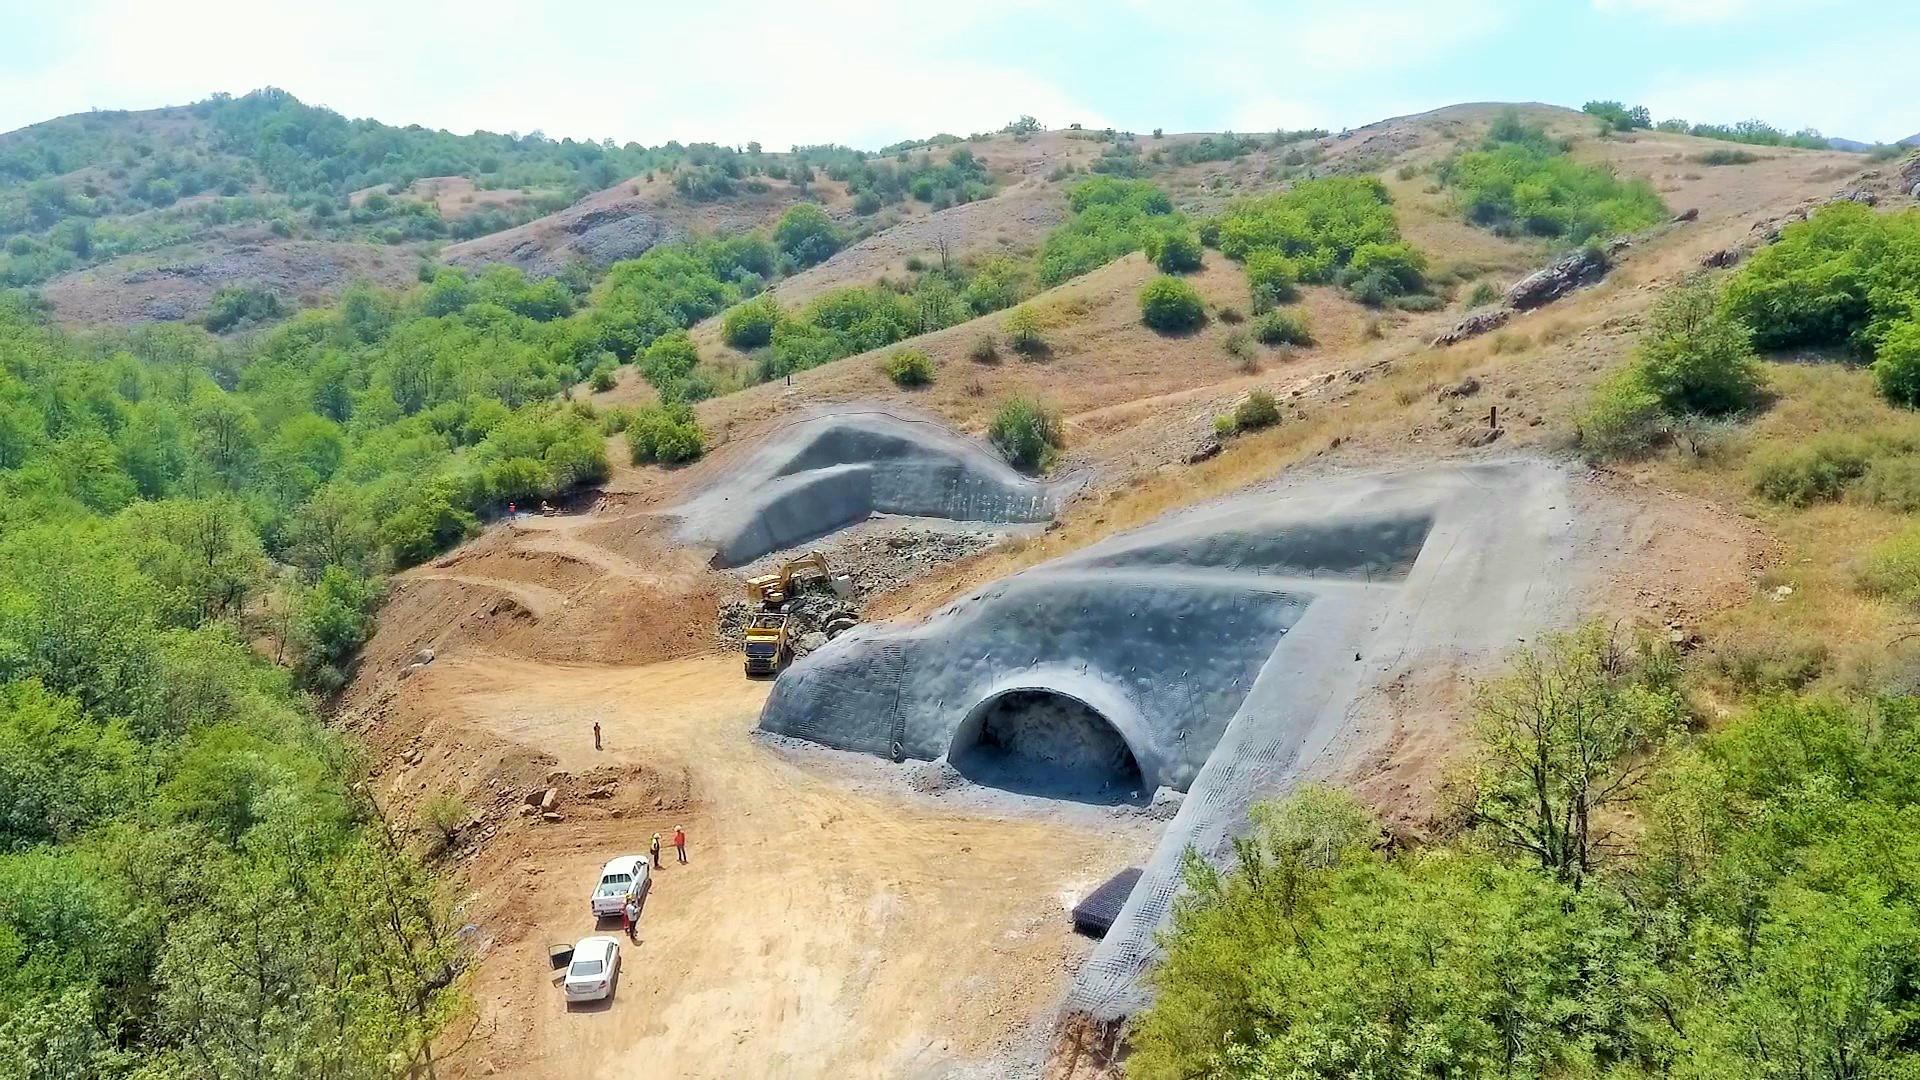 Yeni Əhmədbəyli-Füzuli-Şuşa avtomobil yolunda tunellərin inşası başlayıb - FOTO